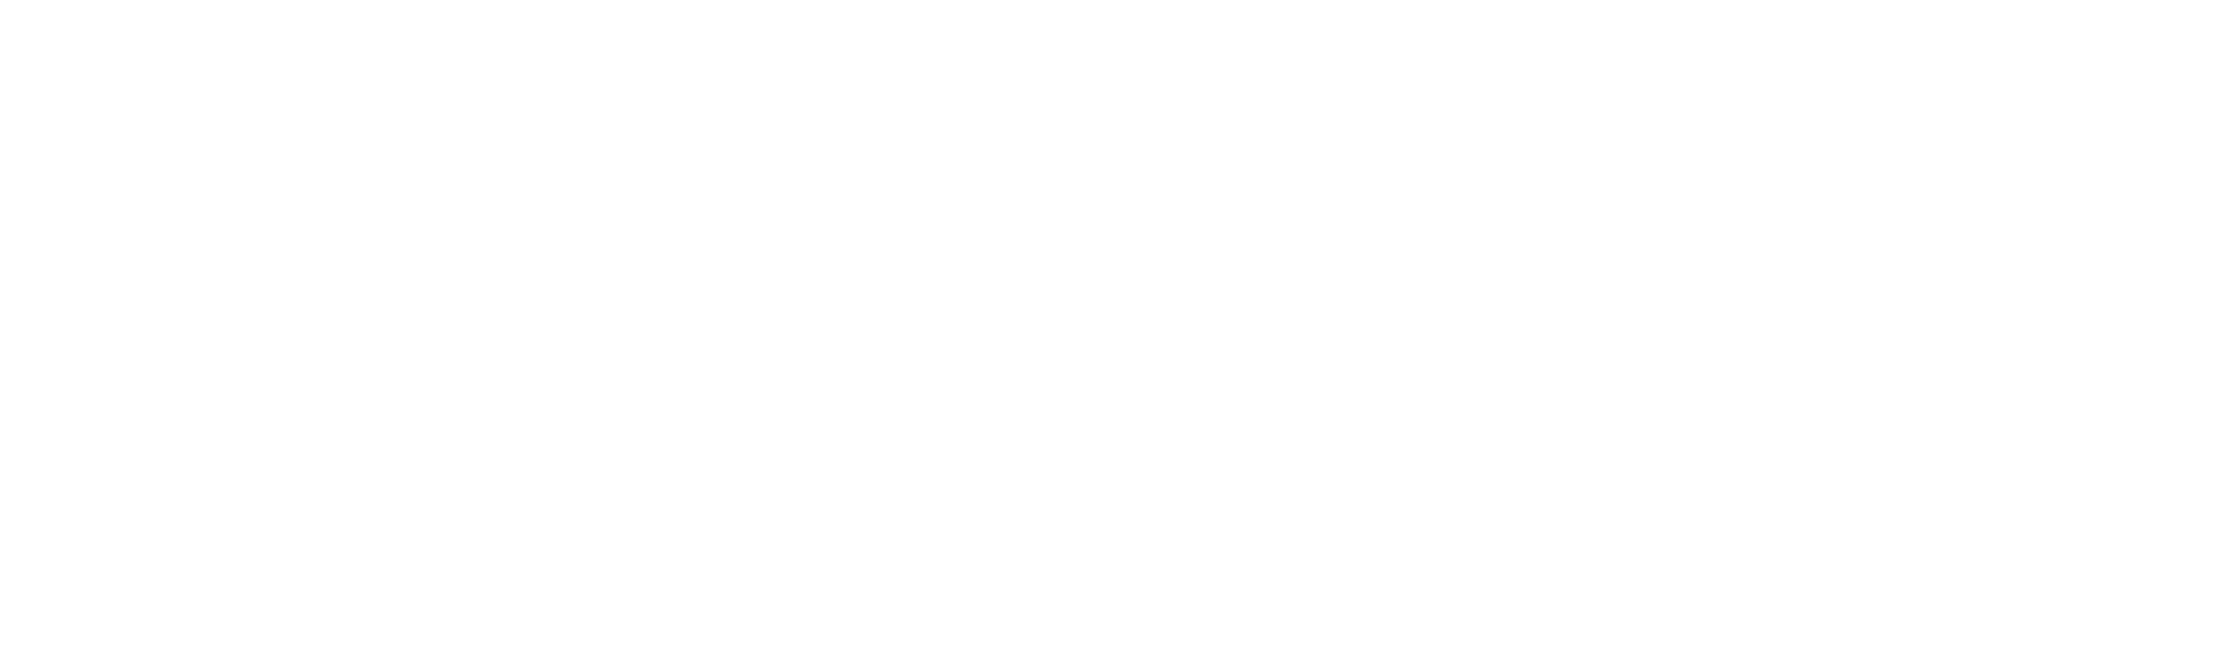 axe-con: Building accessible experiences